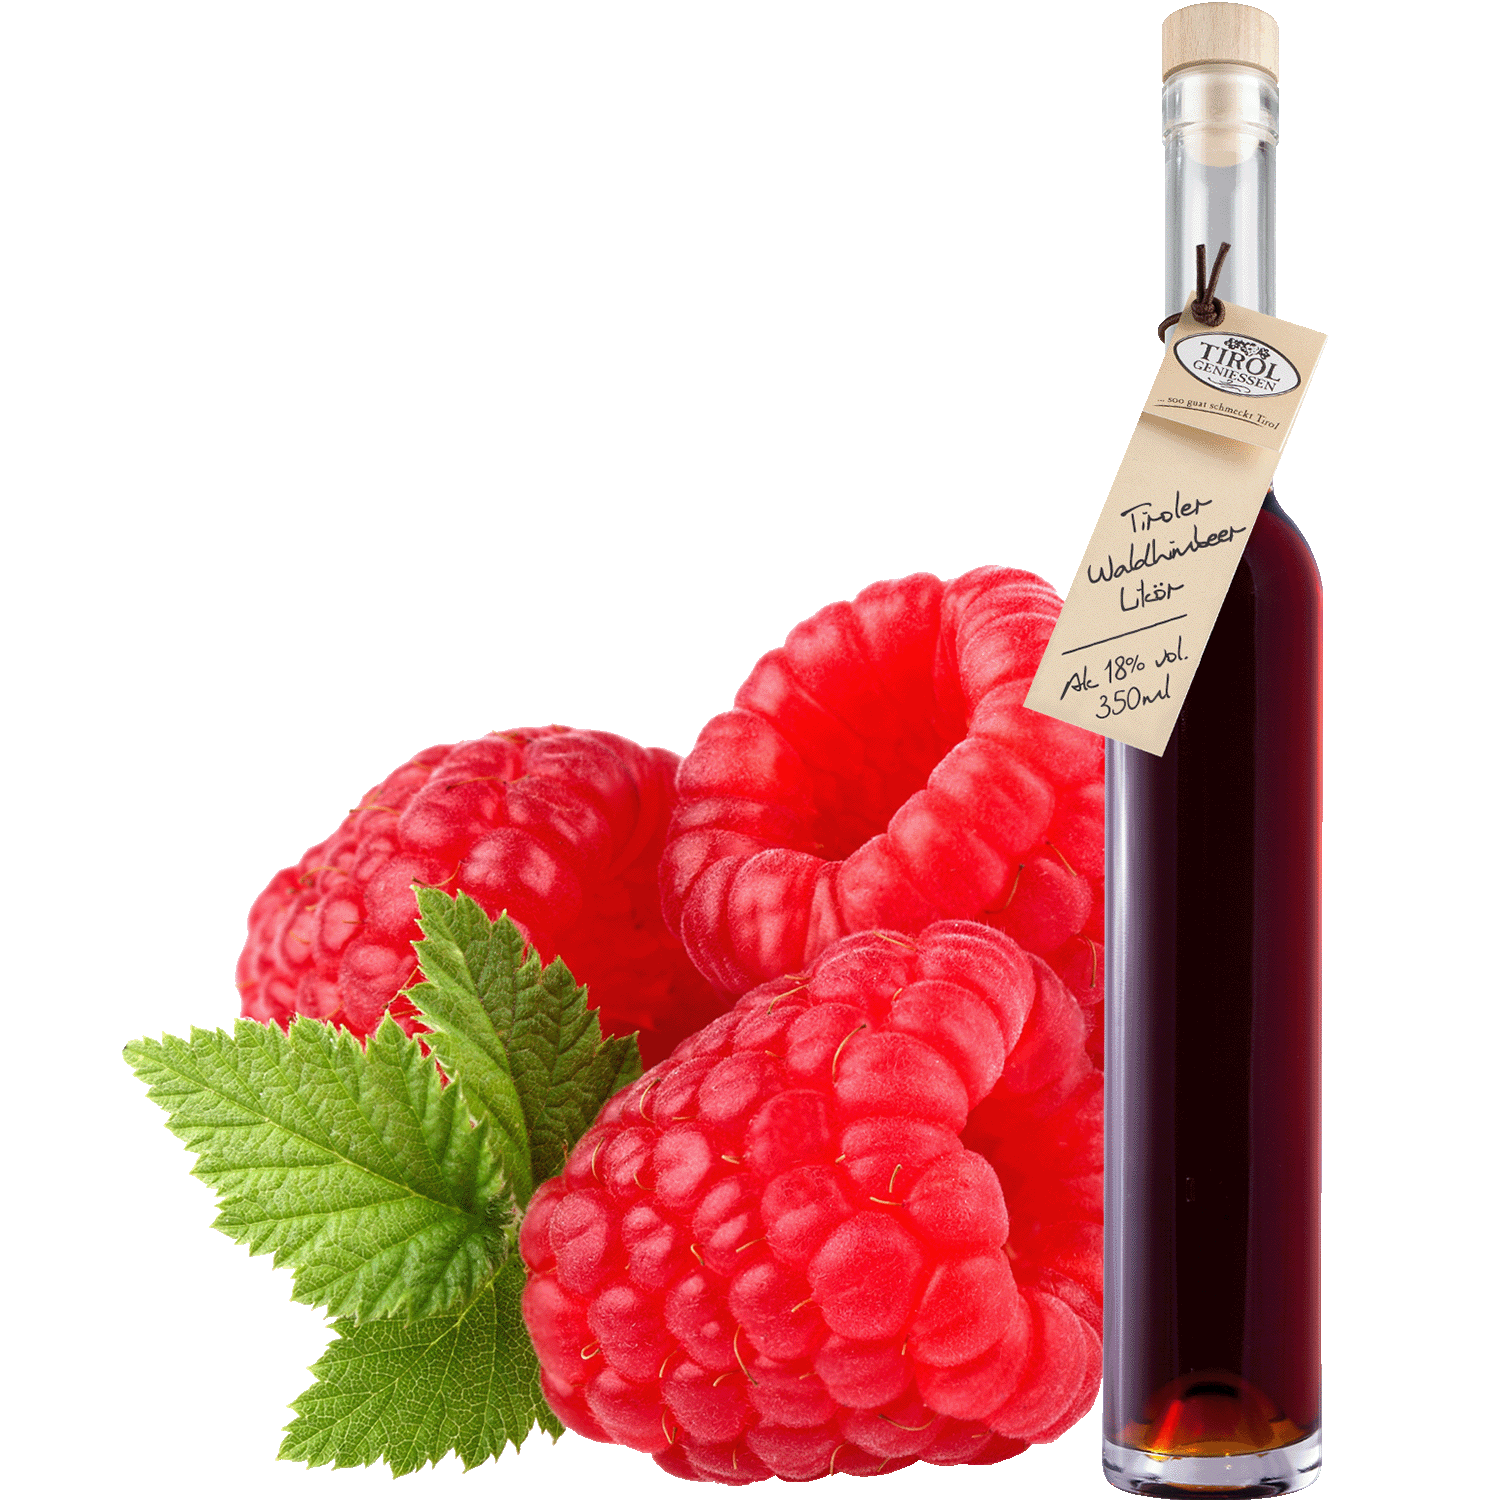 Wild Raspberry Liqueur in gift bottle from Austria from Tirol Geniessen